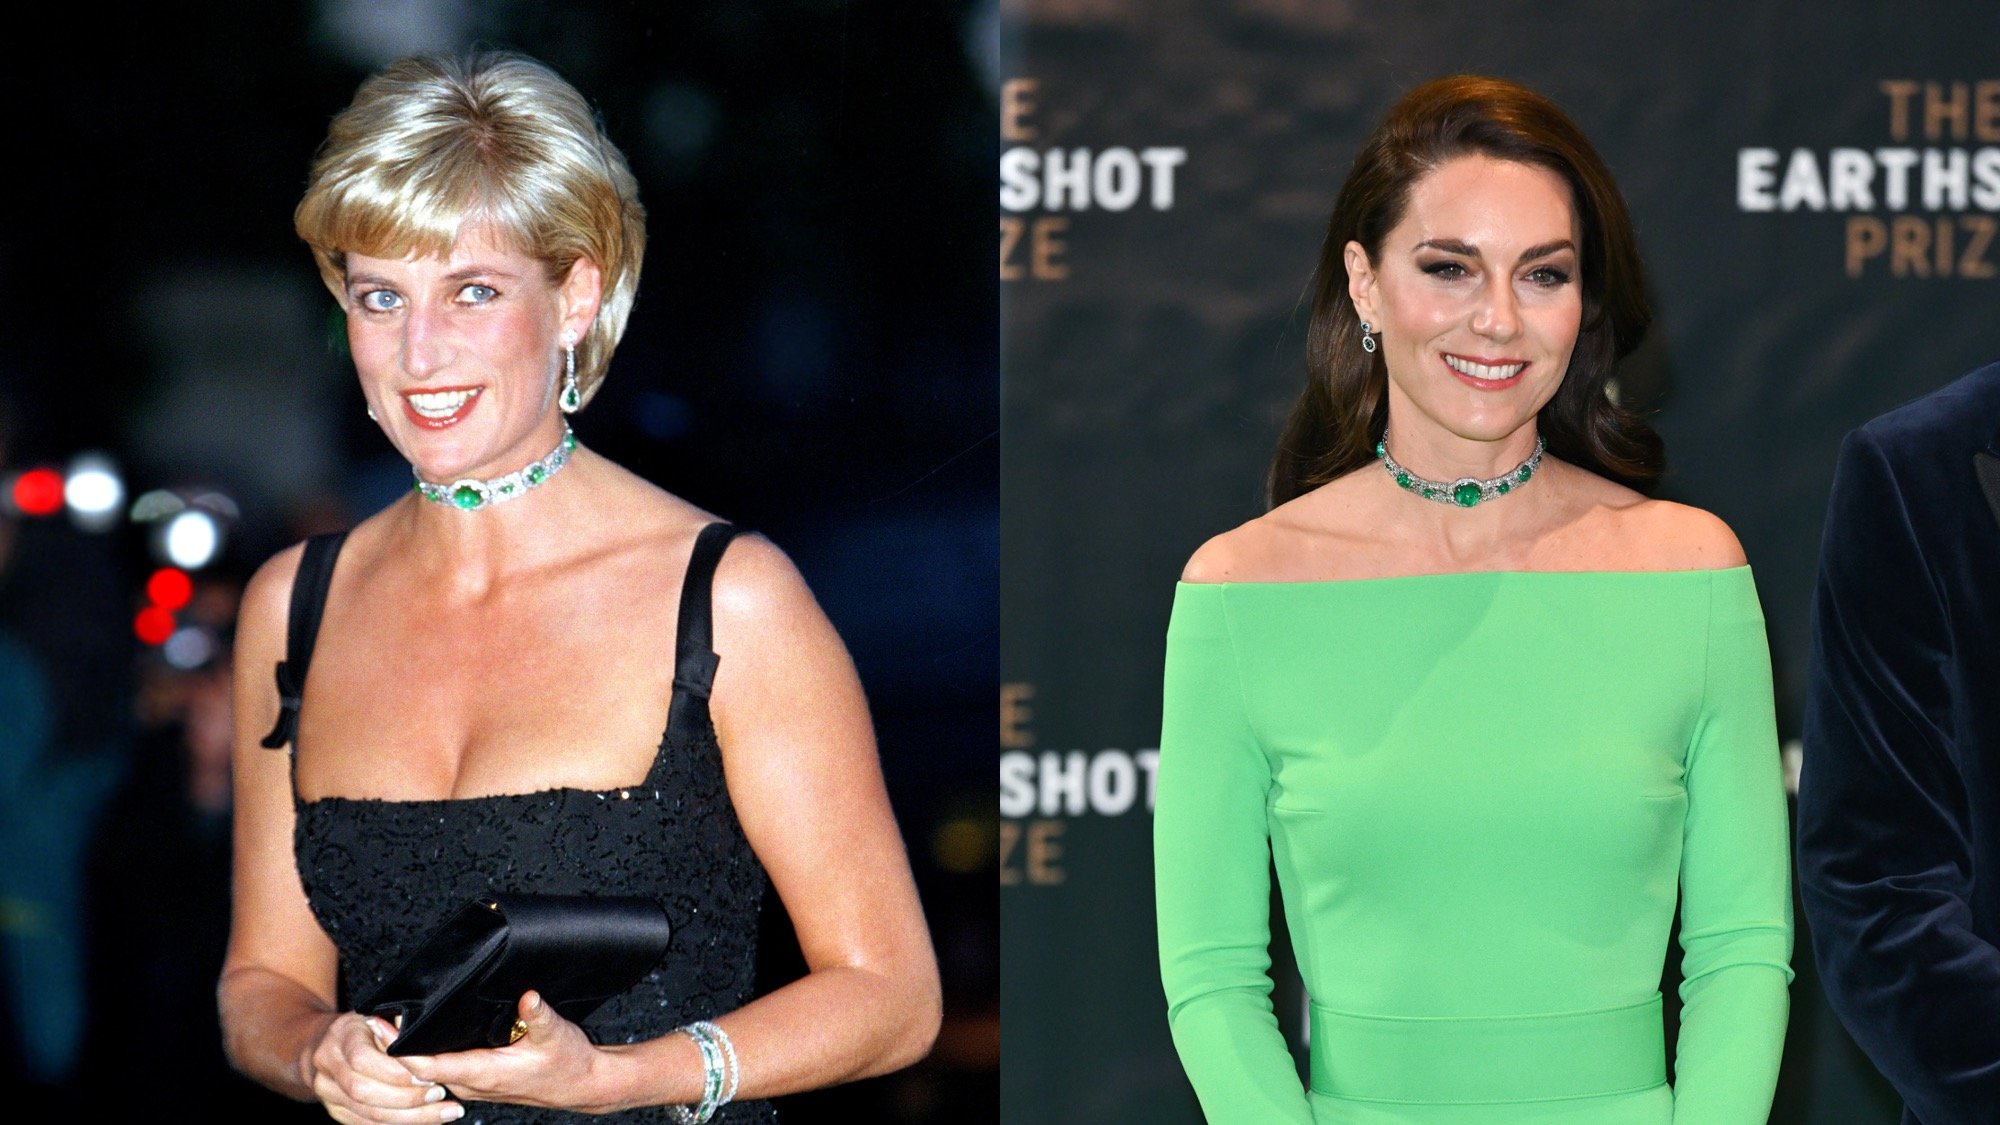 Ekspert od mowy ciała wyjaśnia „podobieństwa” między Kate Middleton a księżną Dianą